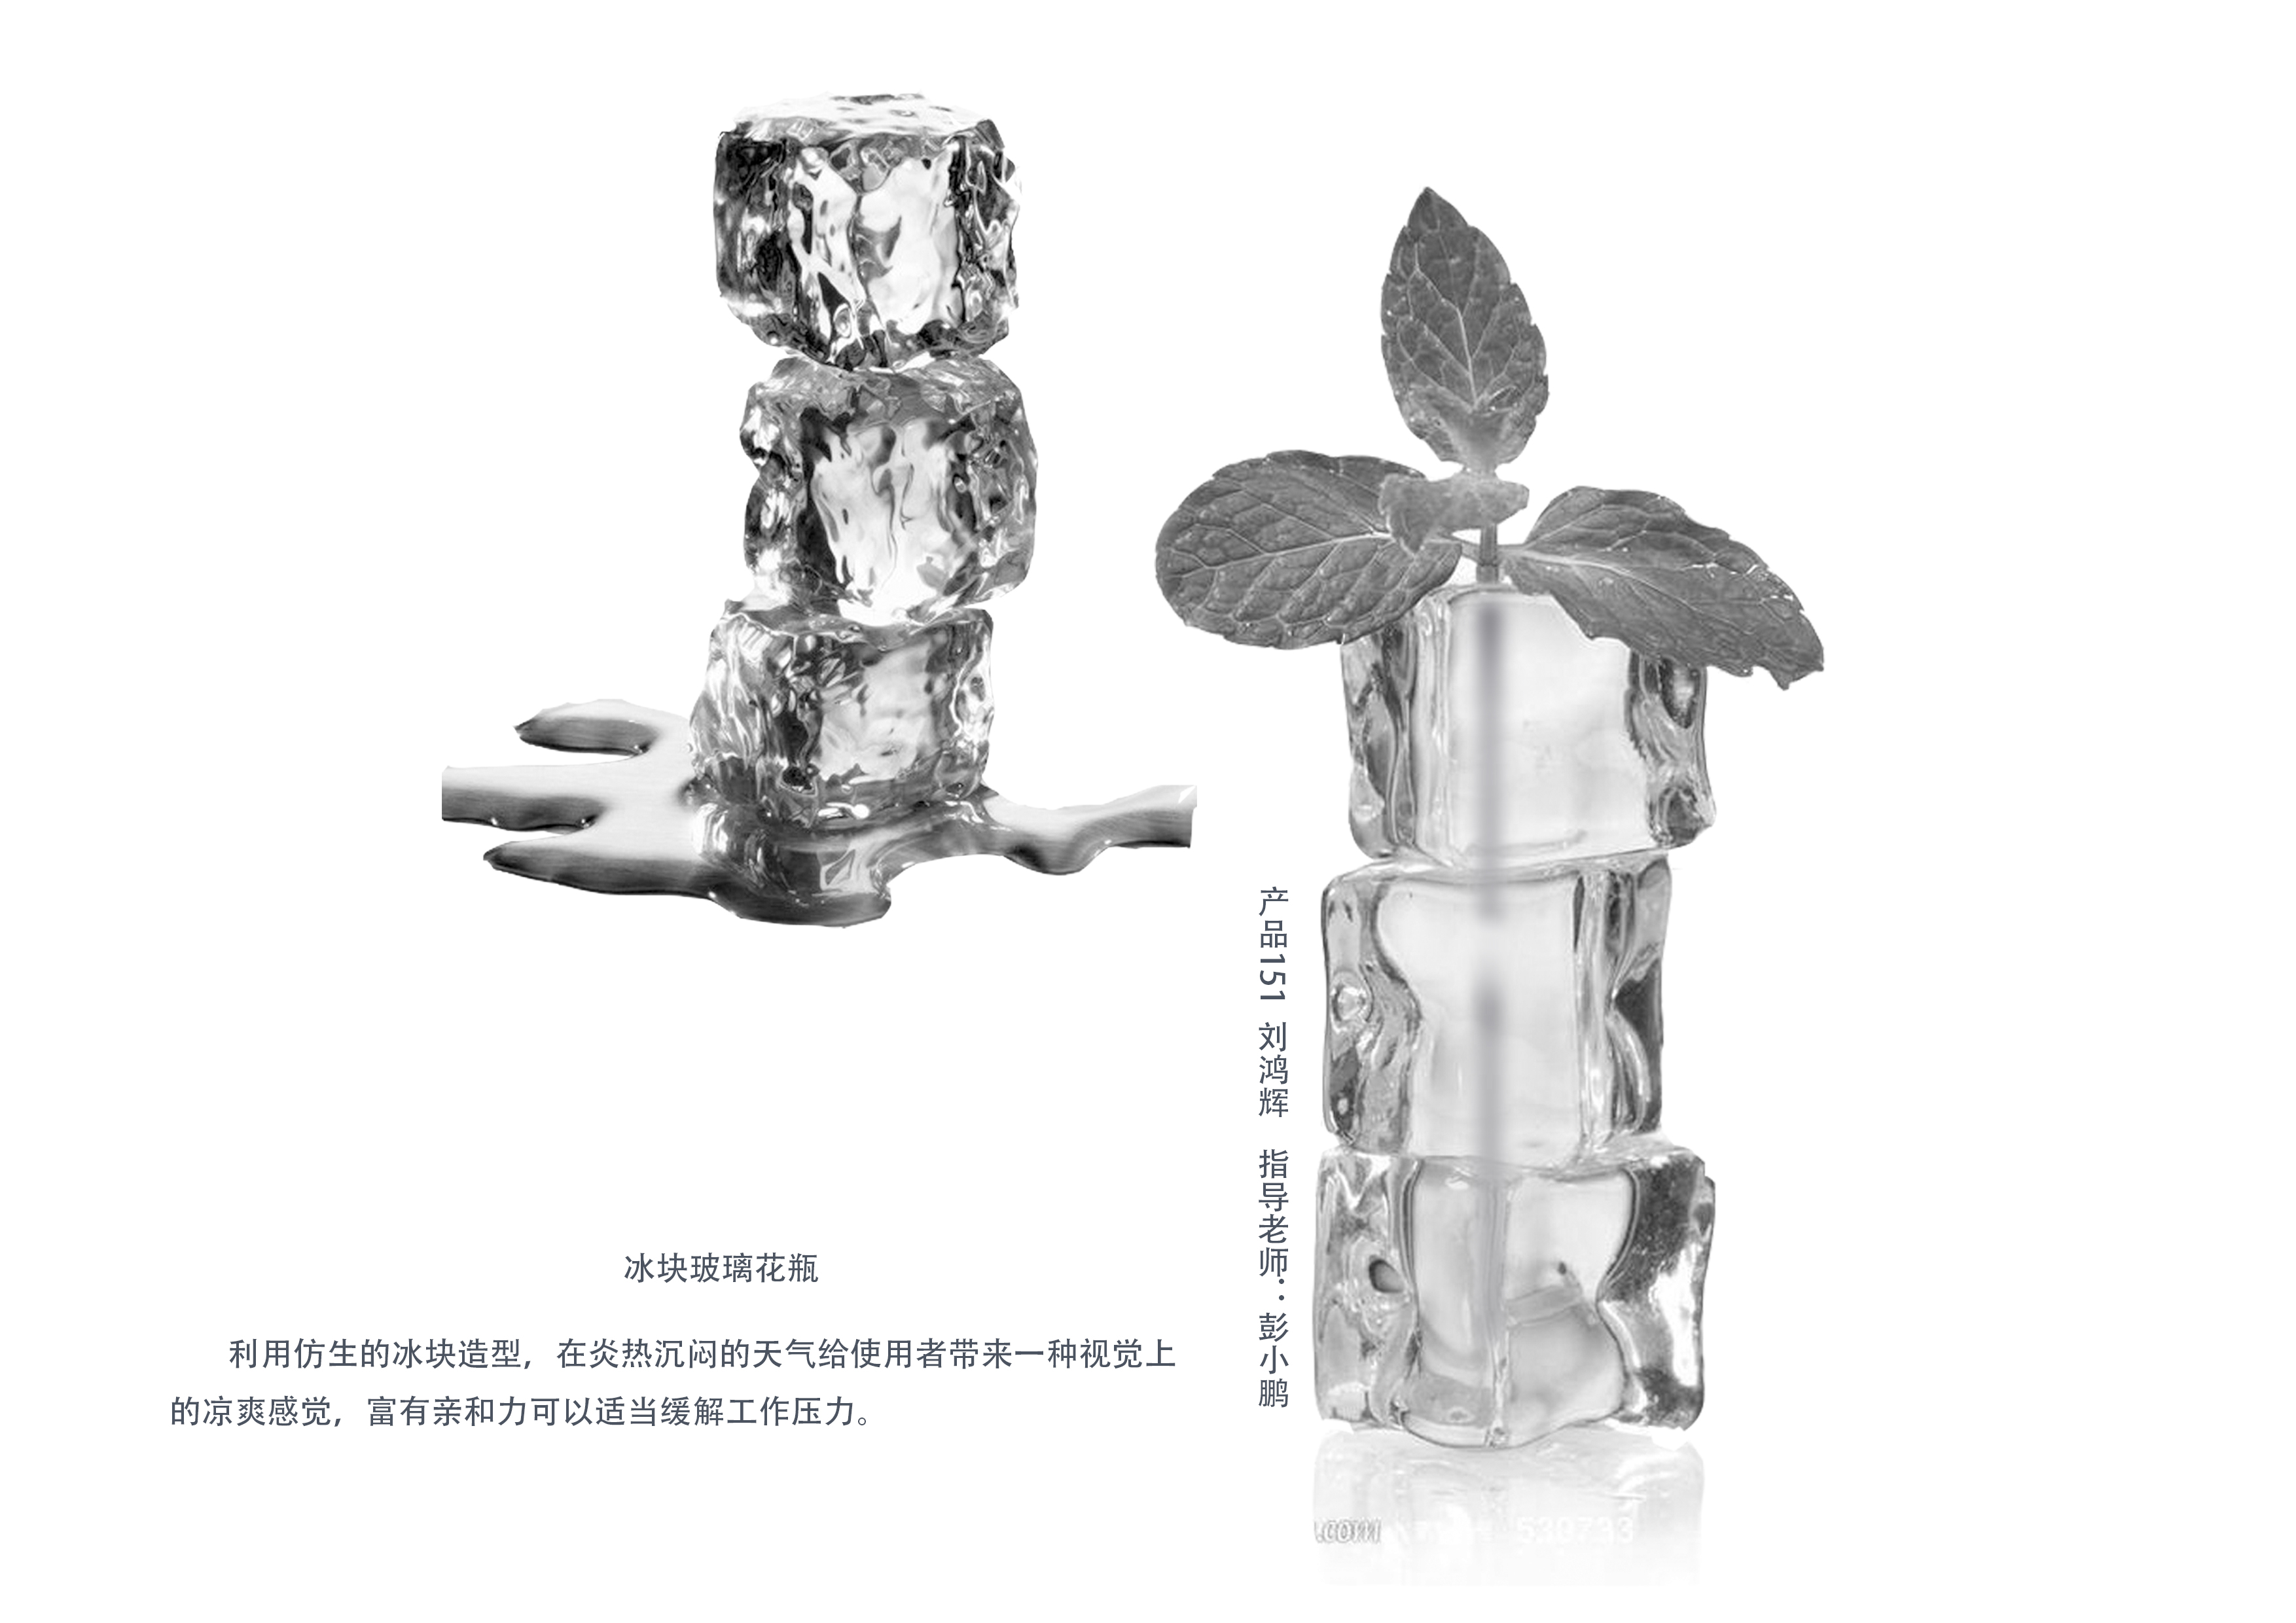 冰块花瓶  产品151刘鸿辉.jpg